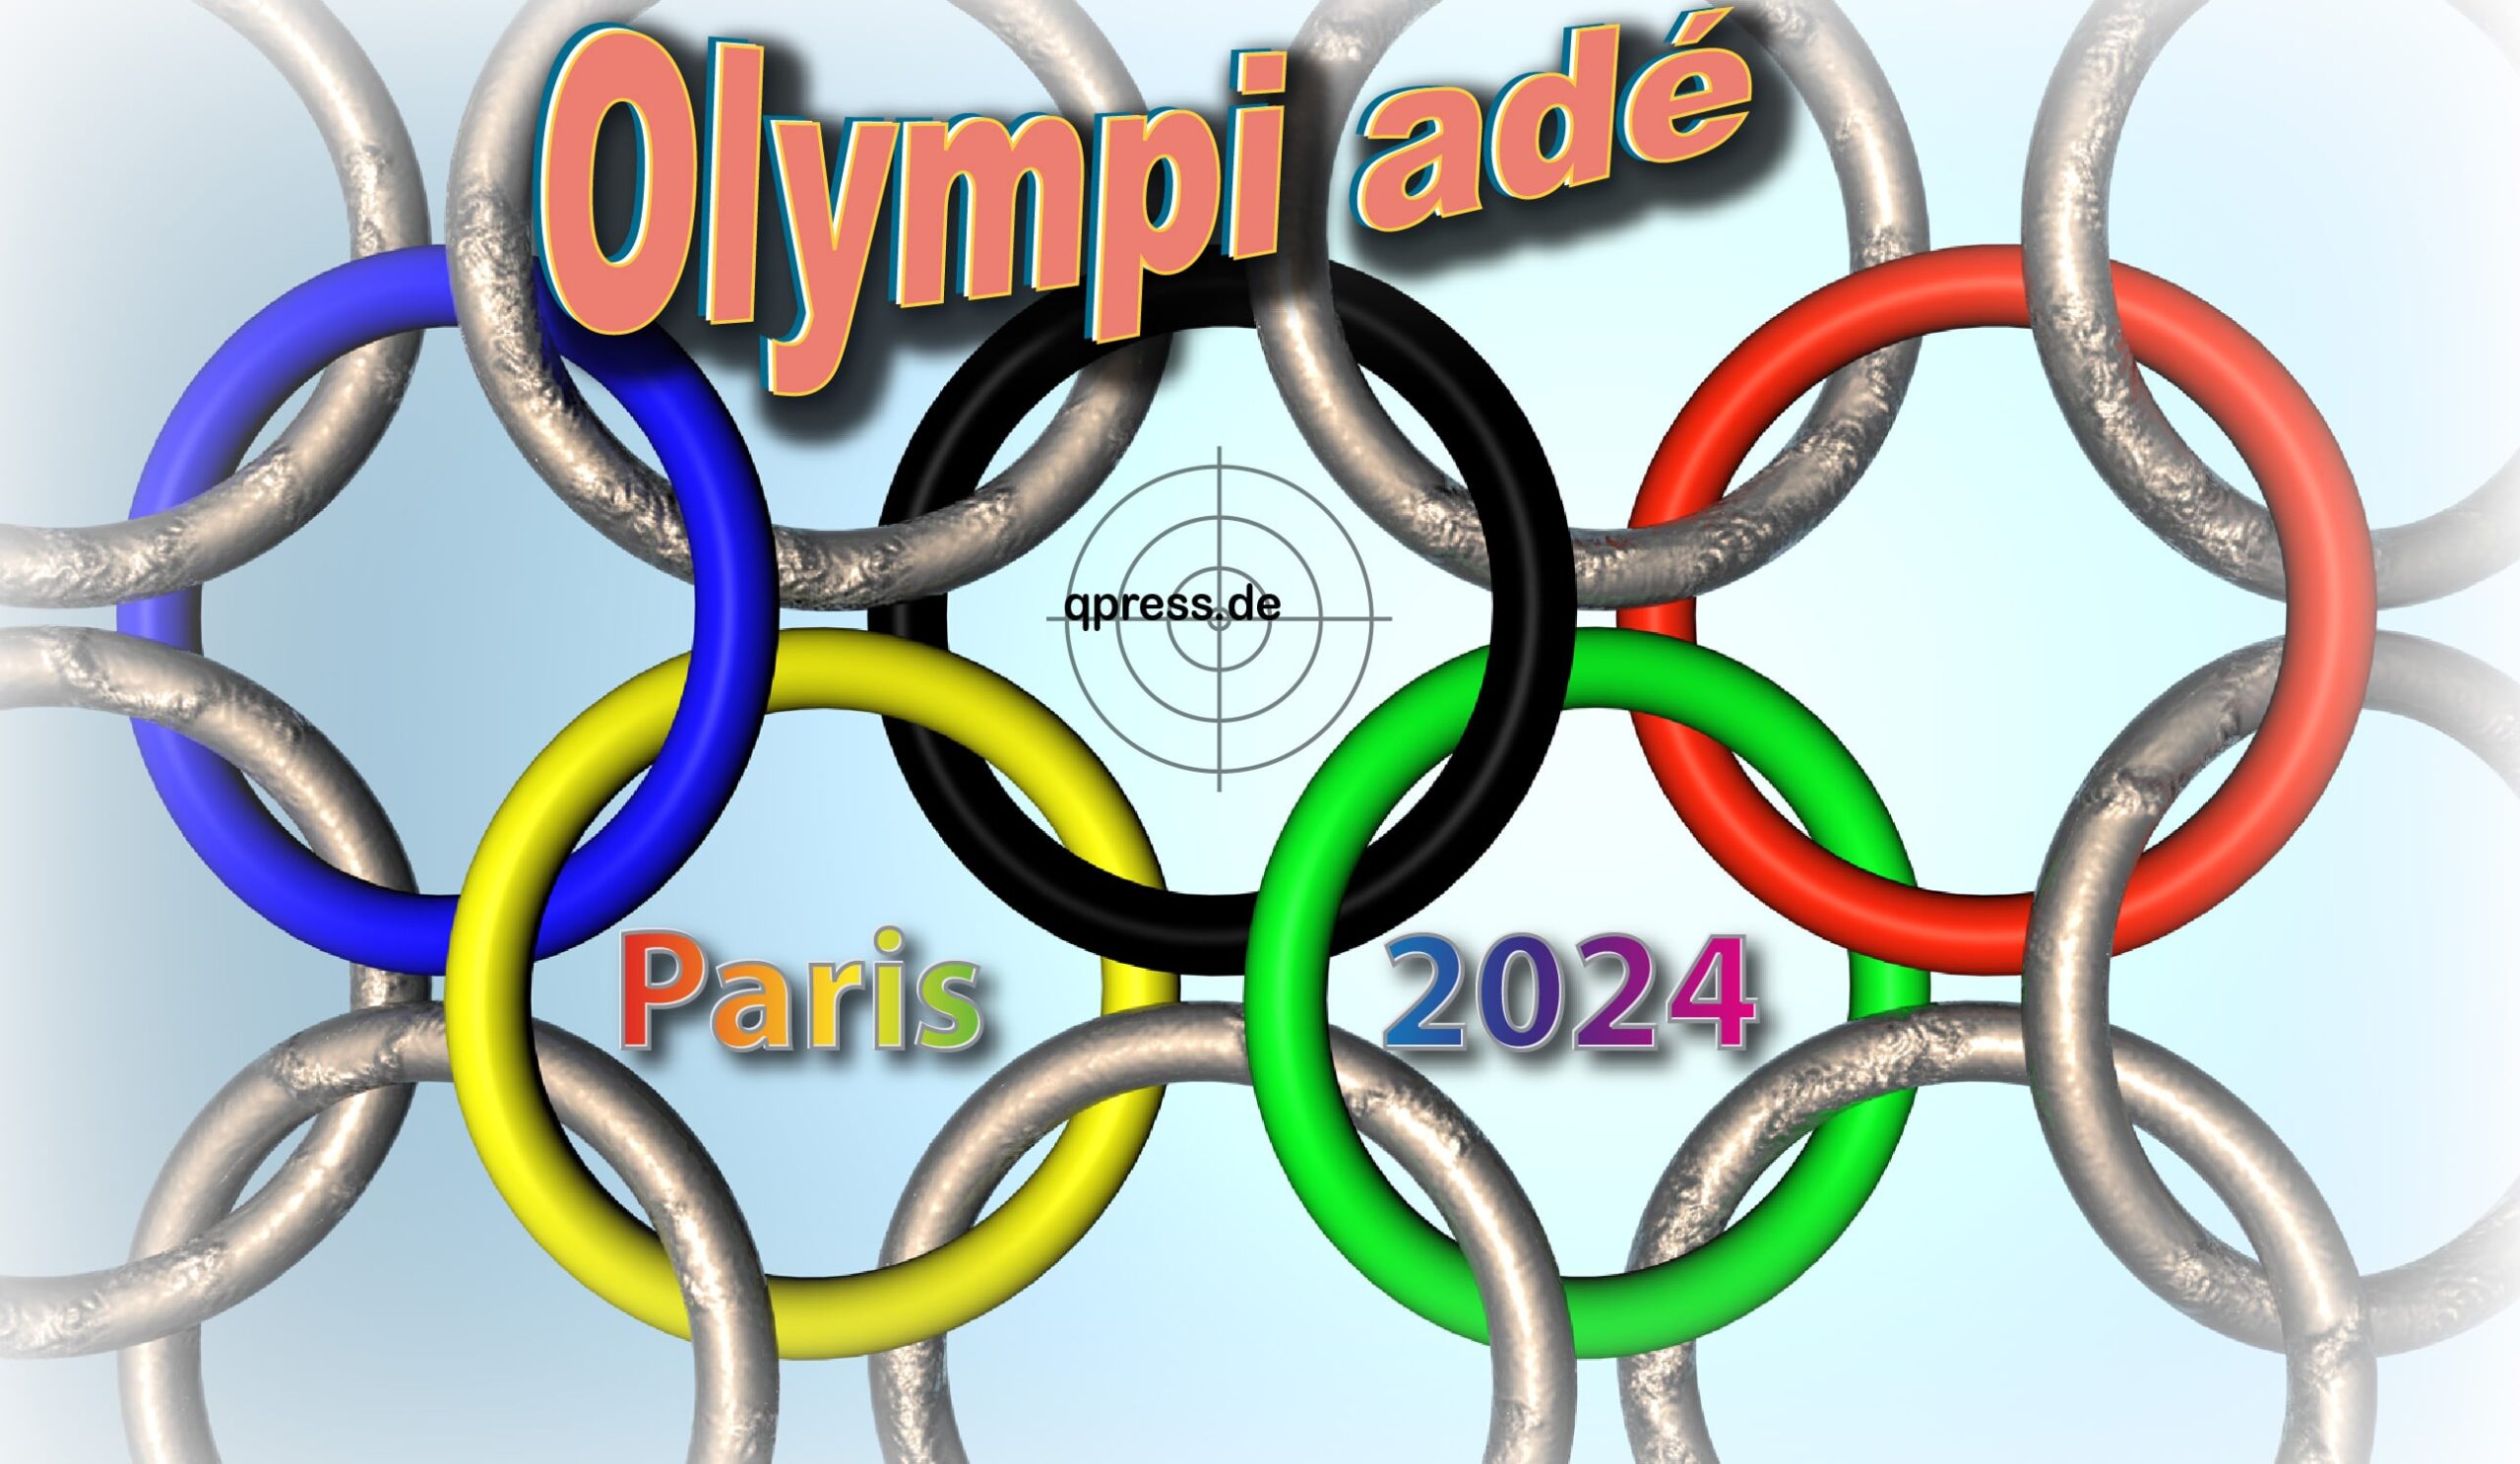 Olympi ade Paris 2024 voelkerrech sanktionen kriegsspiele